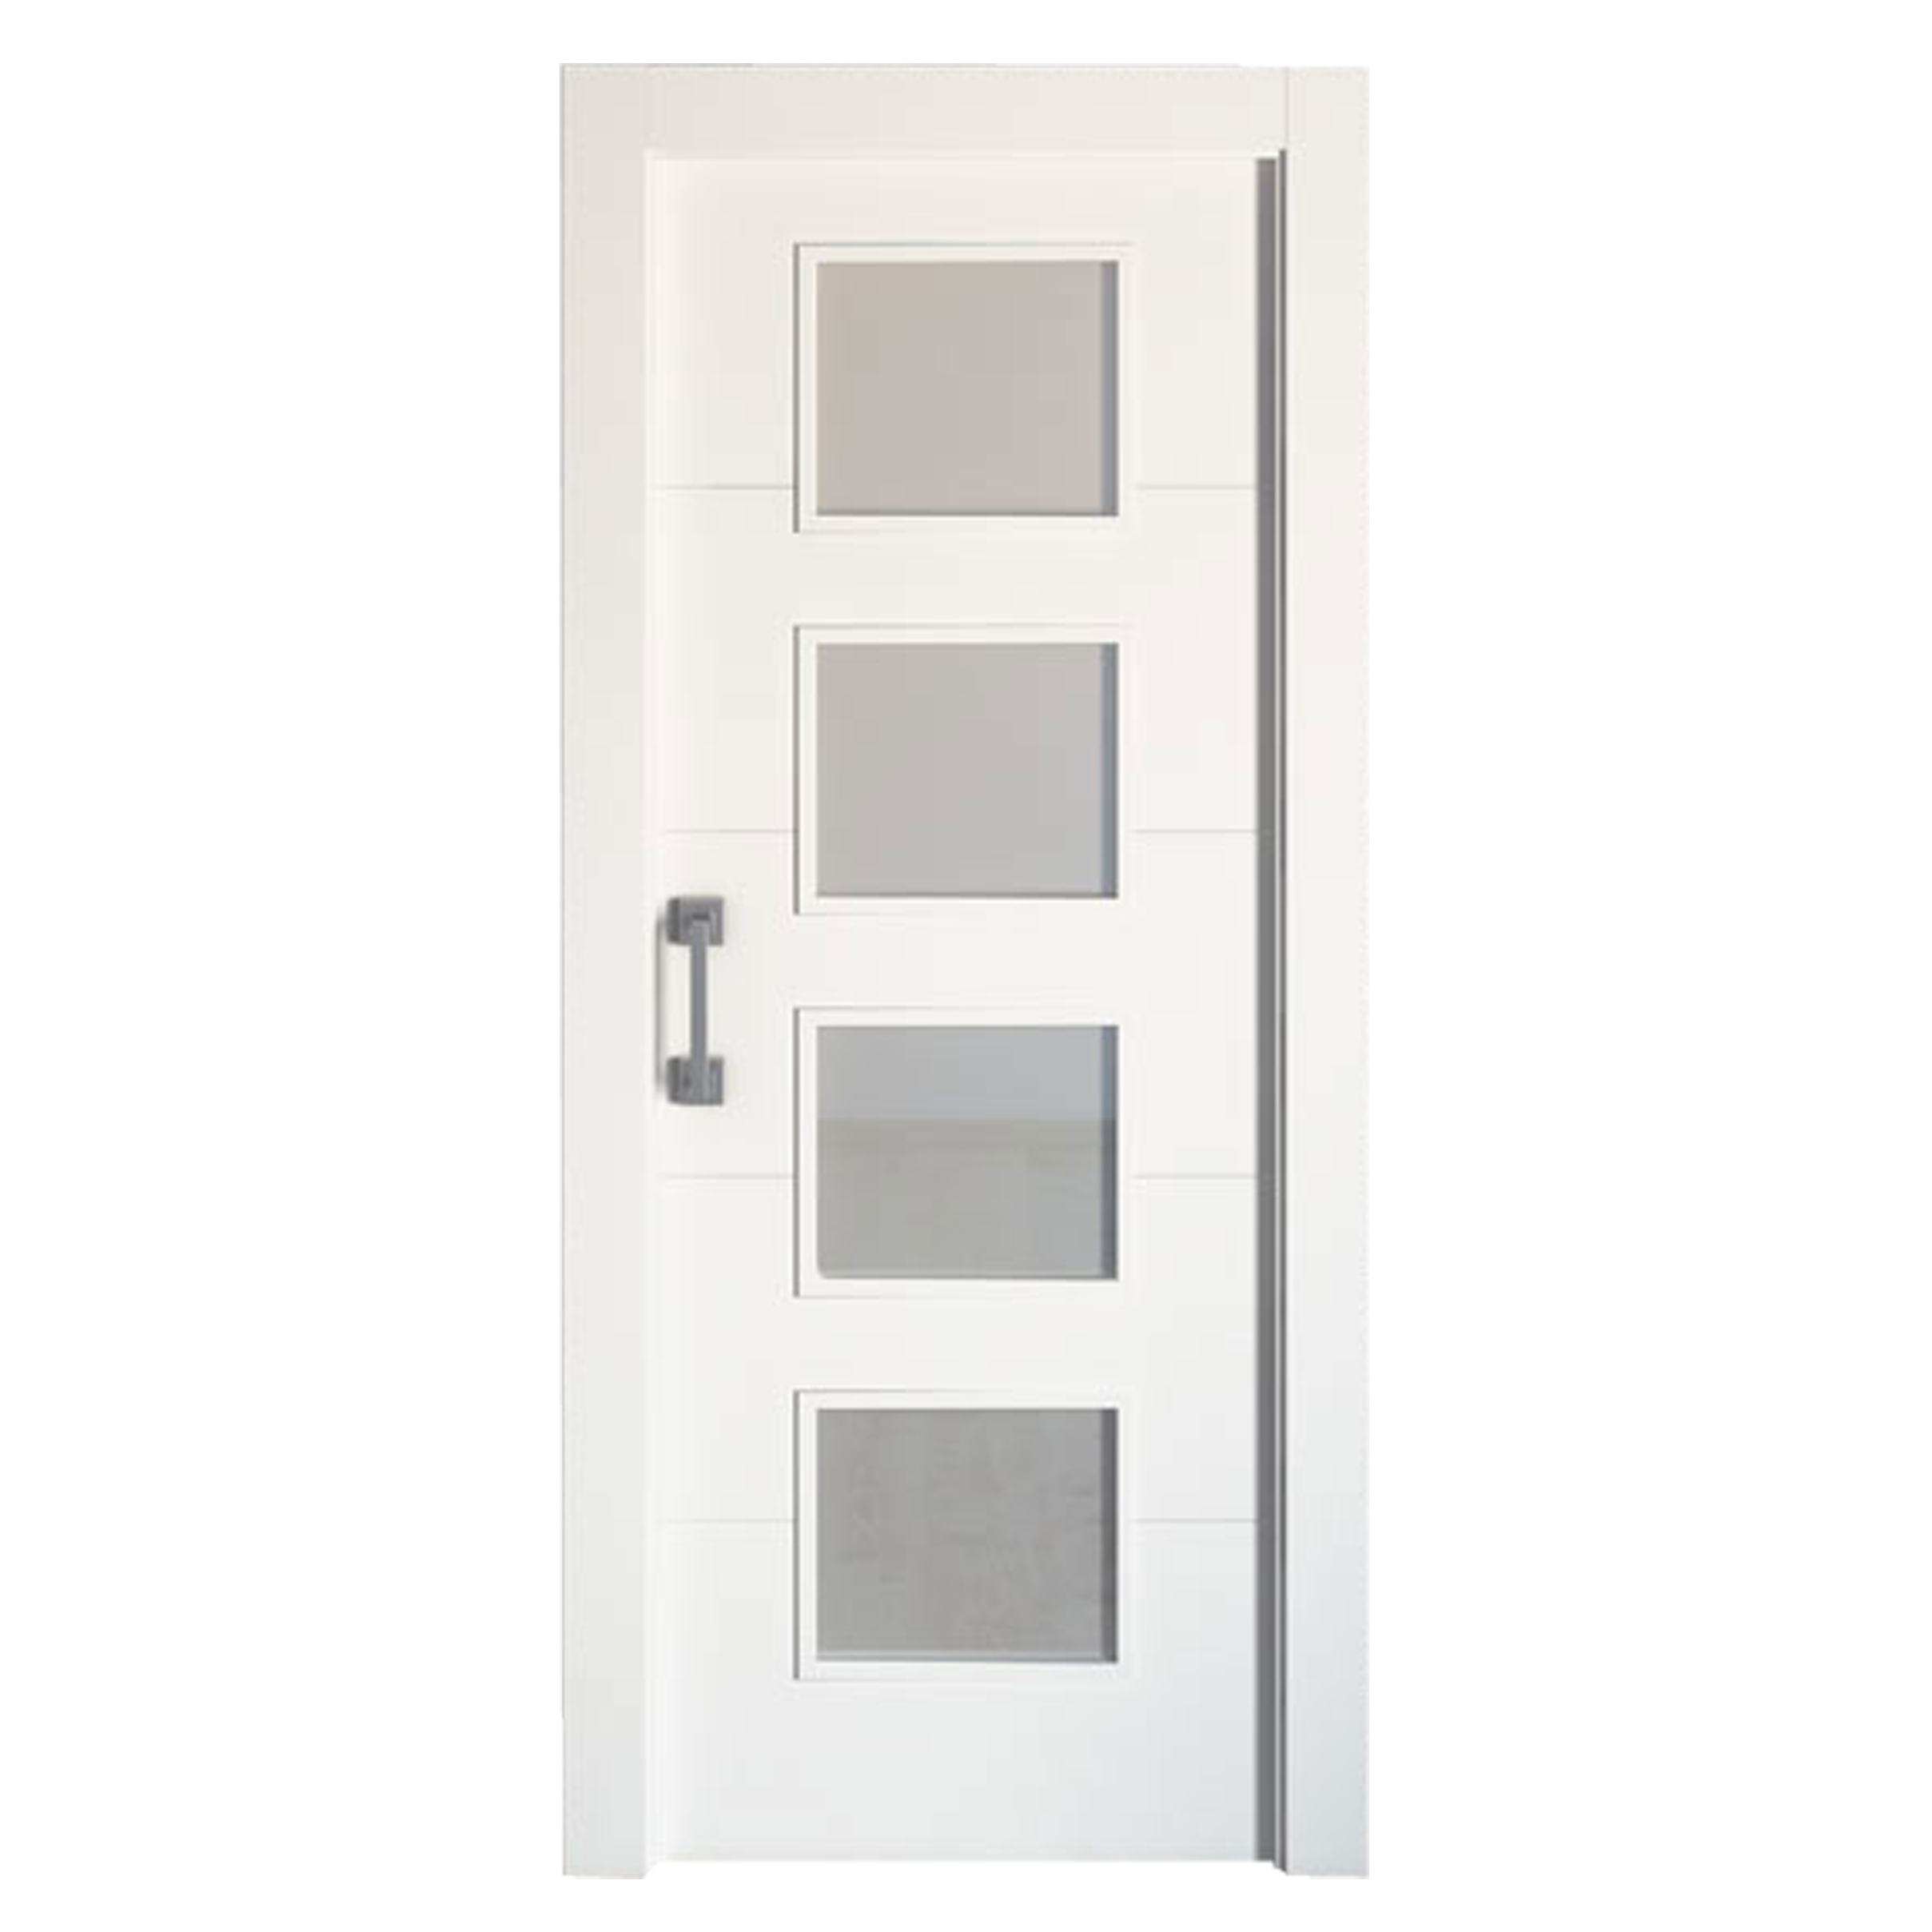 Puerta corredera lucerna blanca line plus blanco con cristal de 72.5x203cm